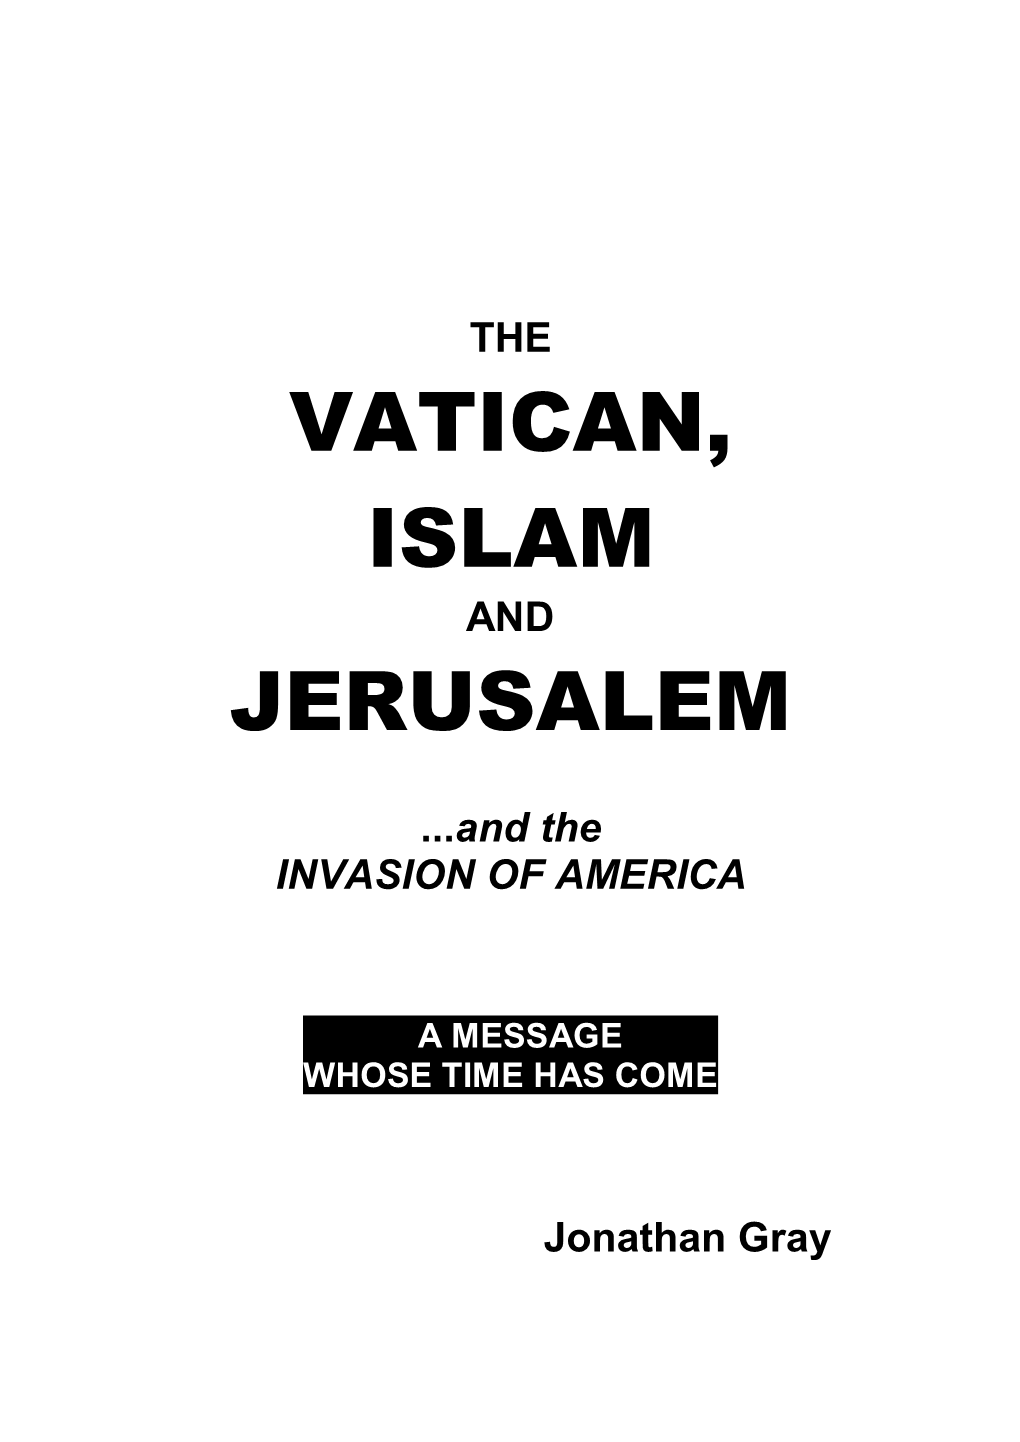 Islam and Jerusalem